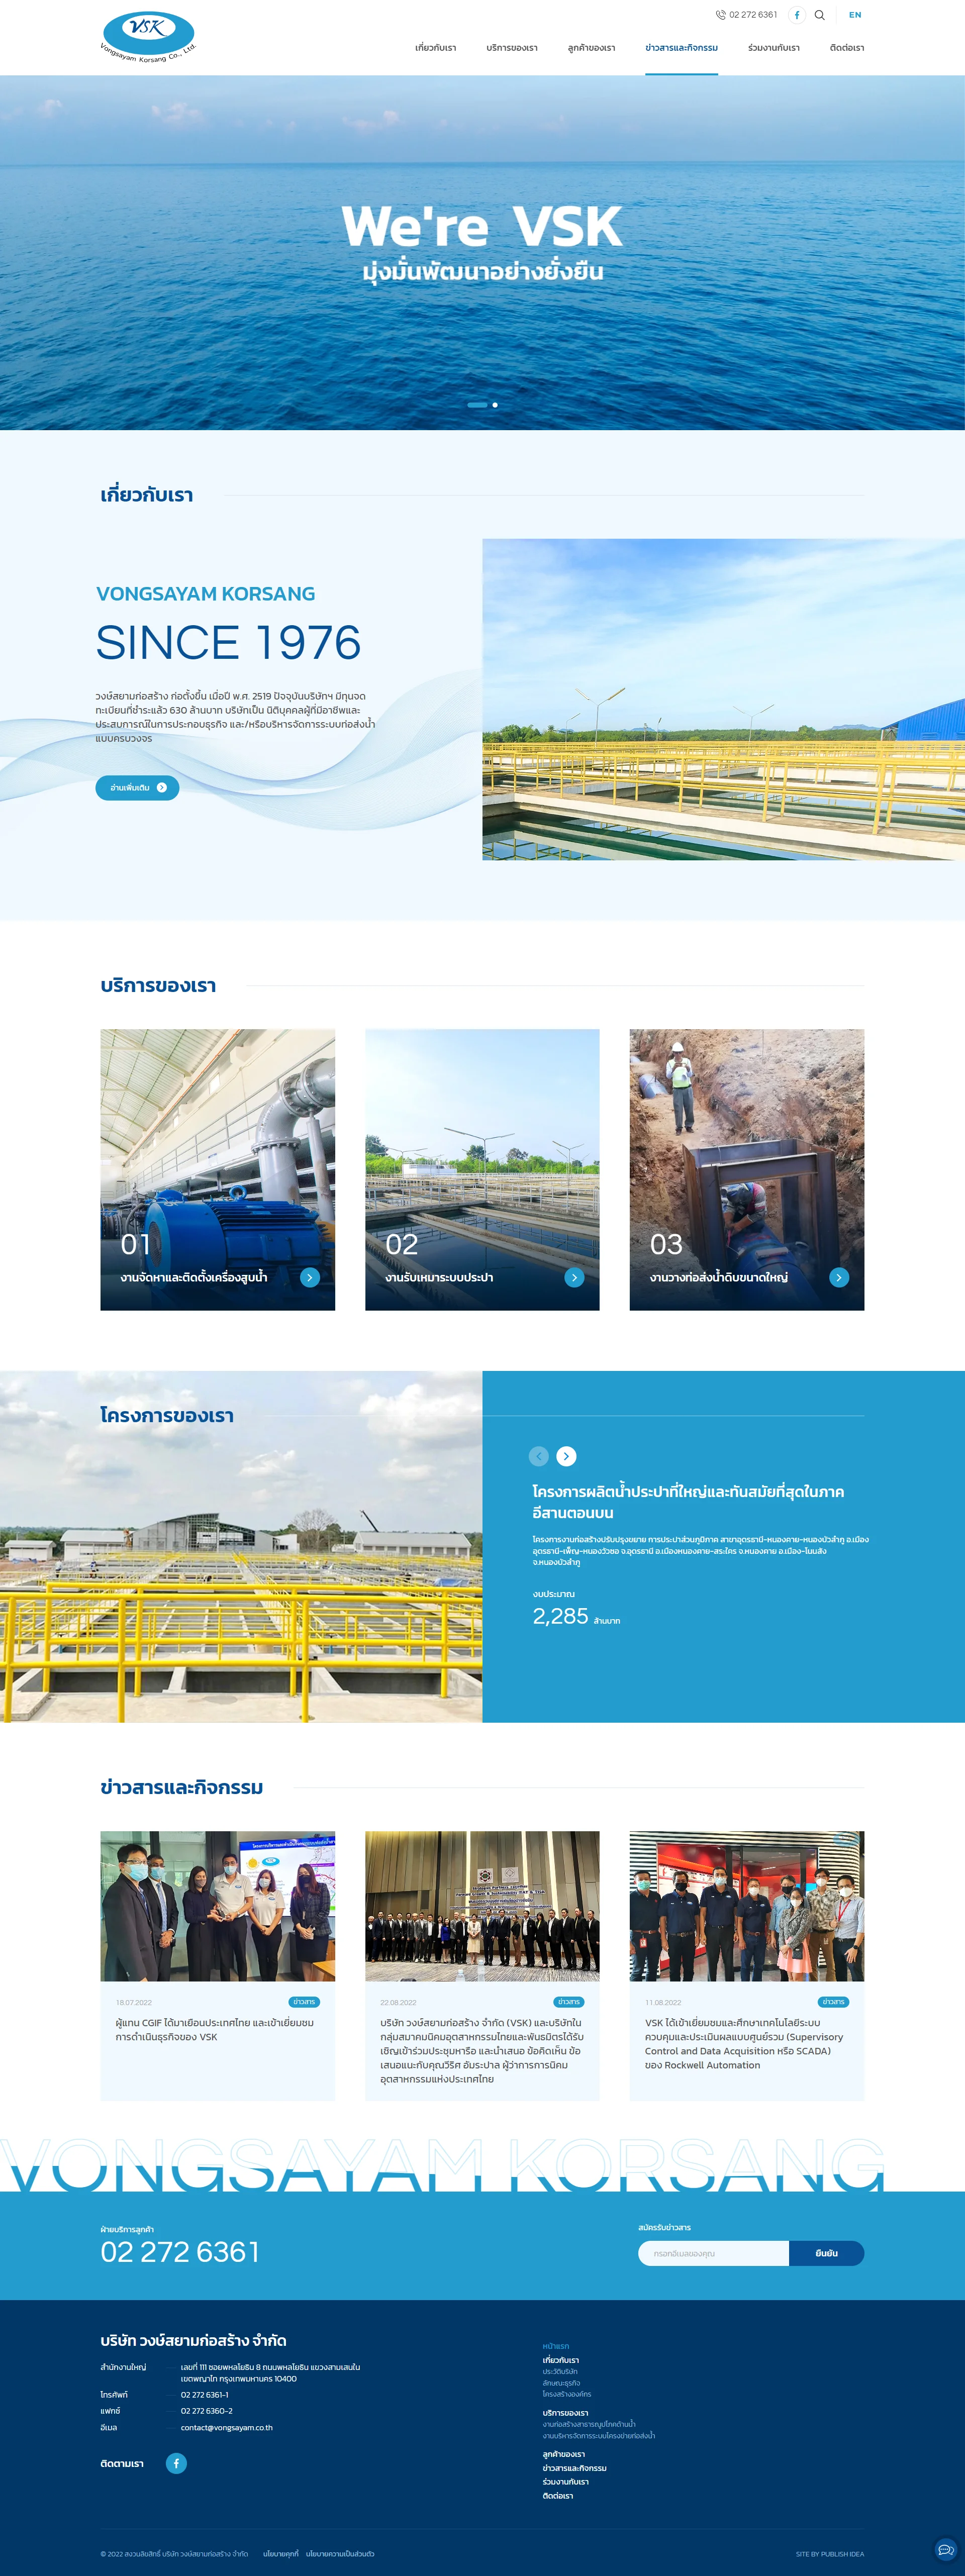 บริการออกแบบเว็บไซต์ให้กับบริษัท วงษ์สยามก่อสร้าง จำกัด ผู้นำด้านบริหารจัดการน้ำแบบครบวงจร